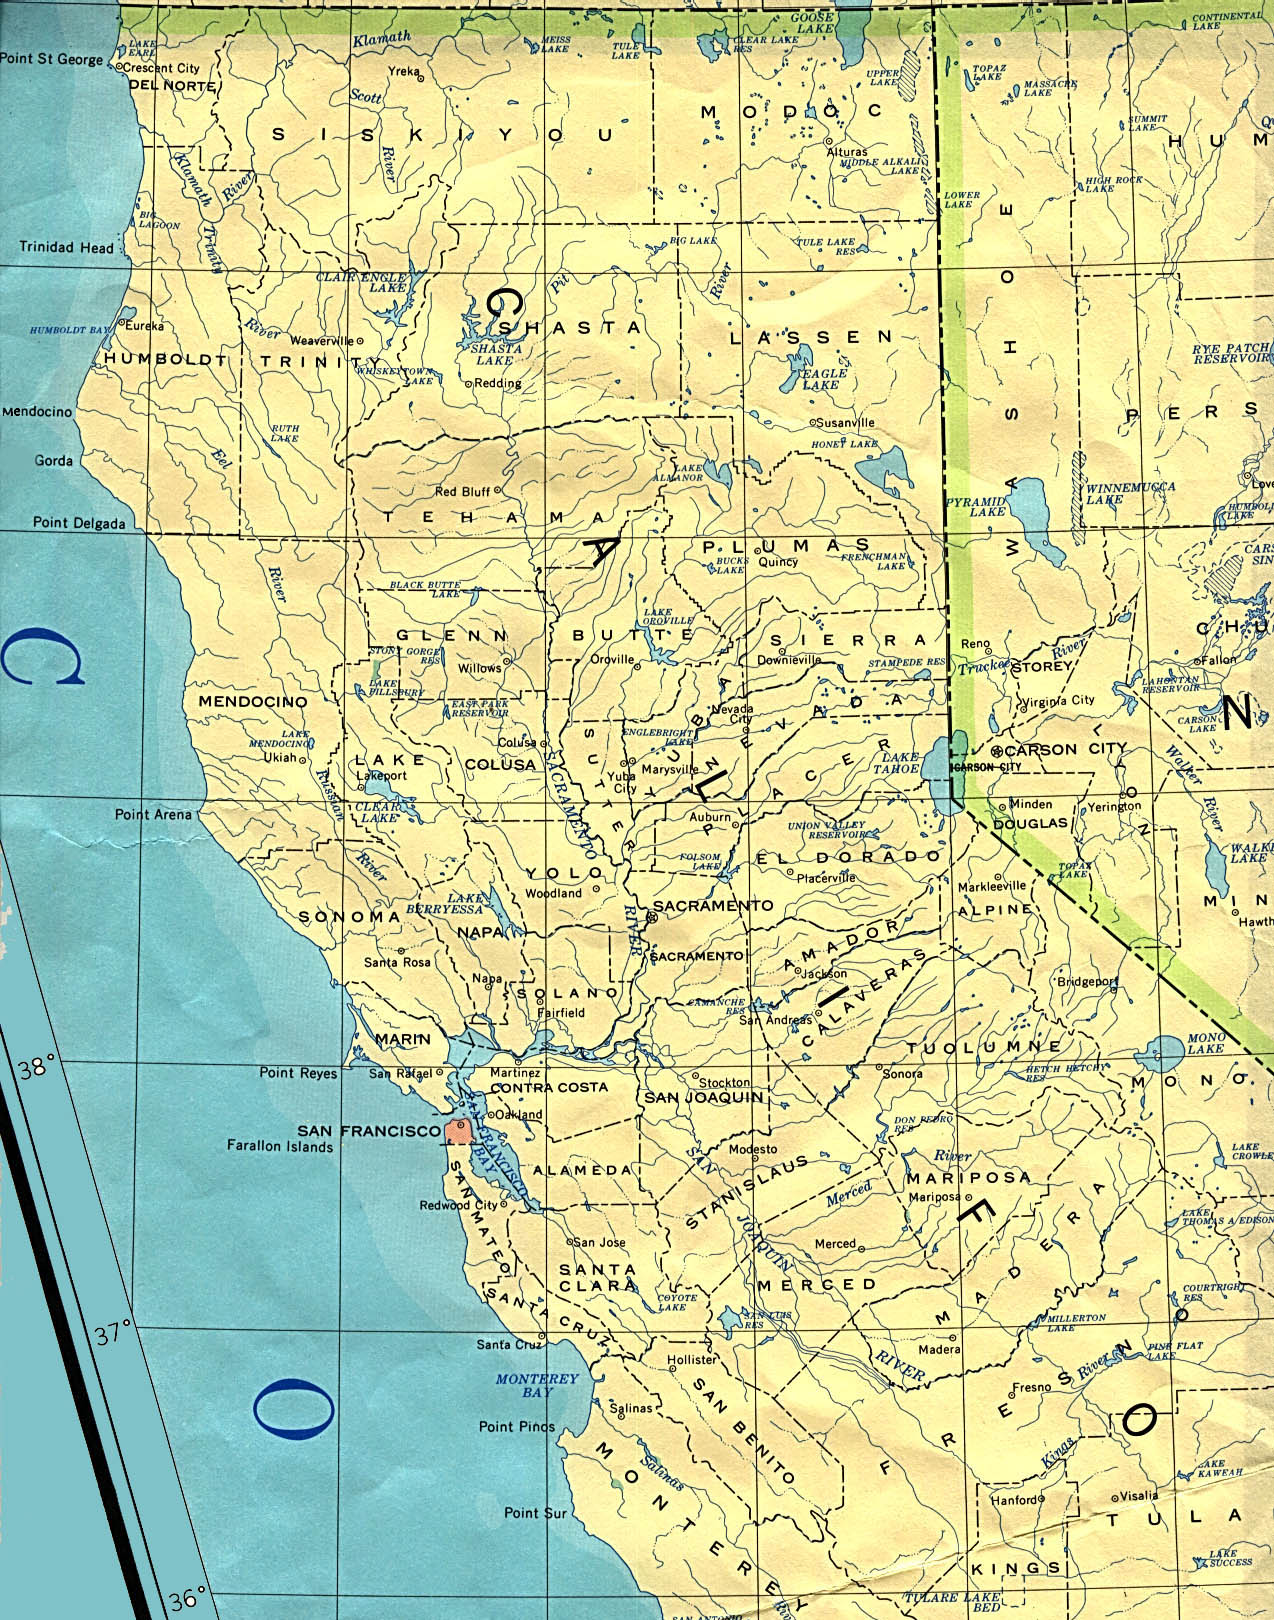 Mapa Político Del Norte Del Estado De California Tamaño Completo Ex Free Hot Nude Porn Pic Gallery